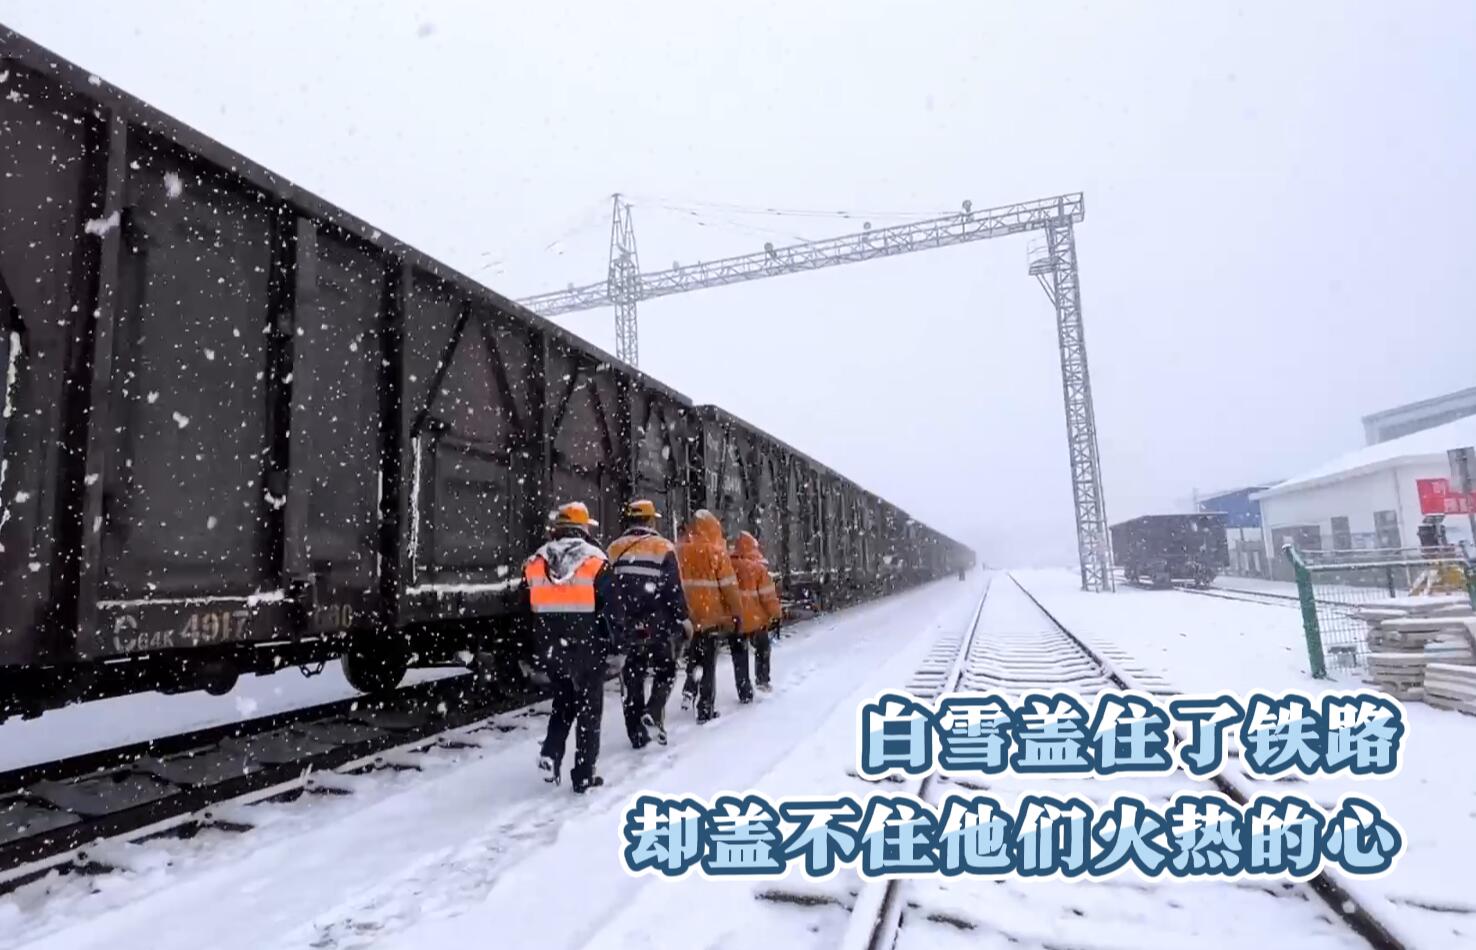 铁运公司微视频《白雪盖住了铁路，却盖不住他们火热的心》